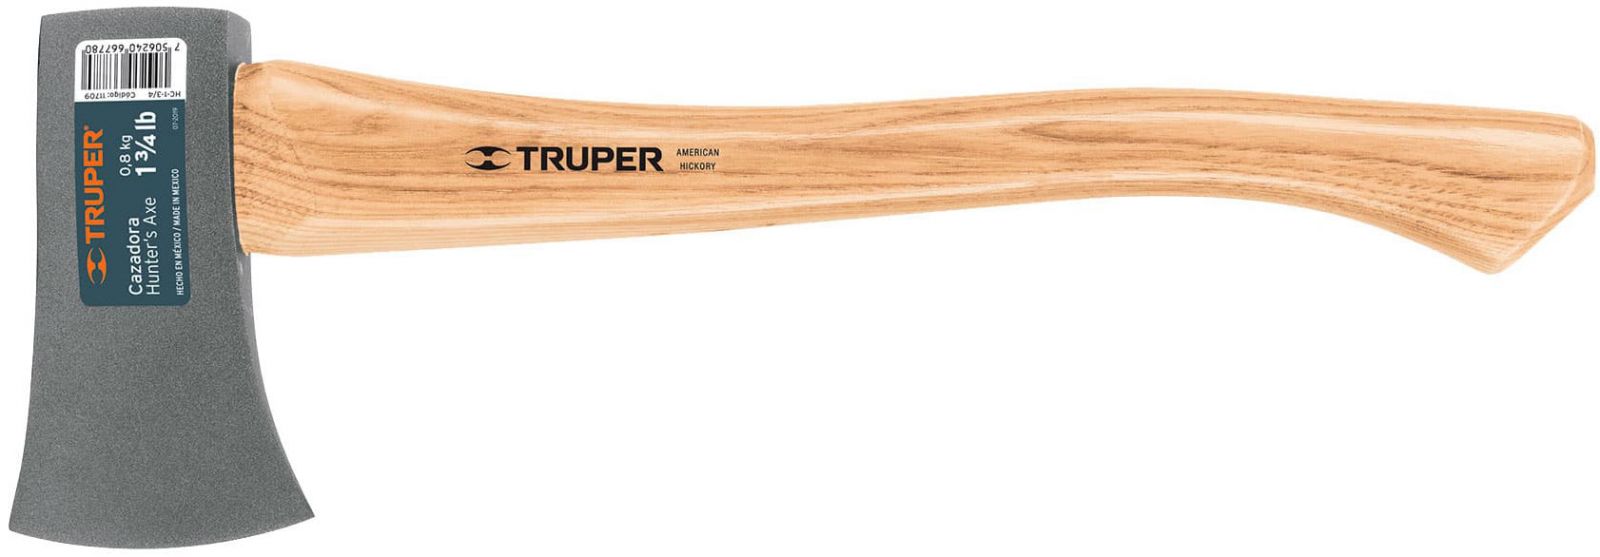 Truper-11709